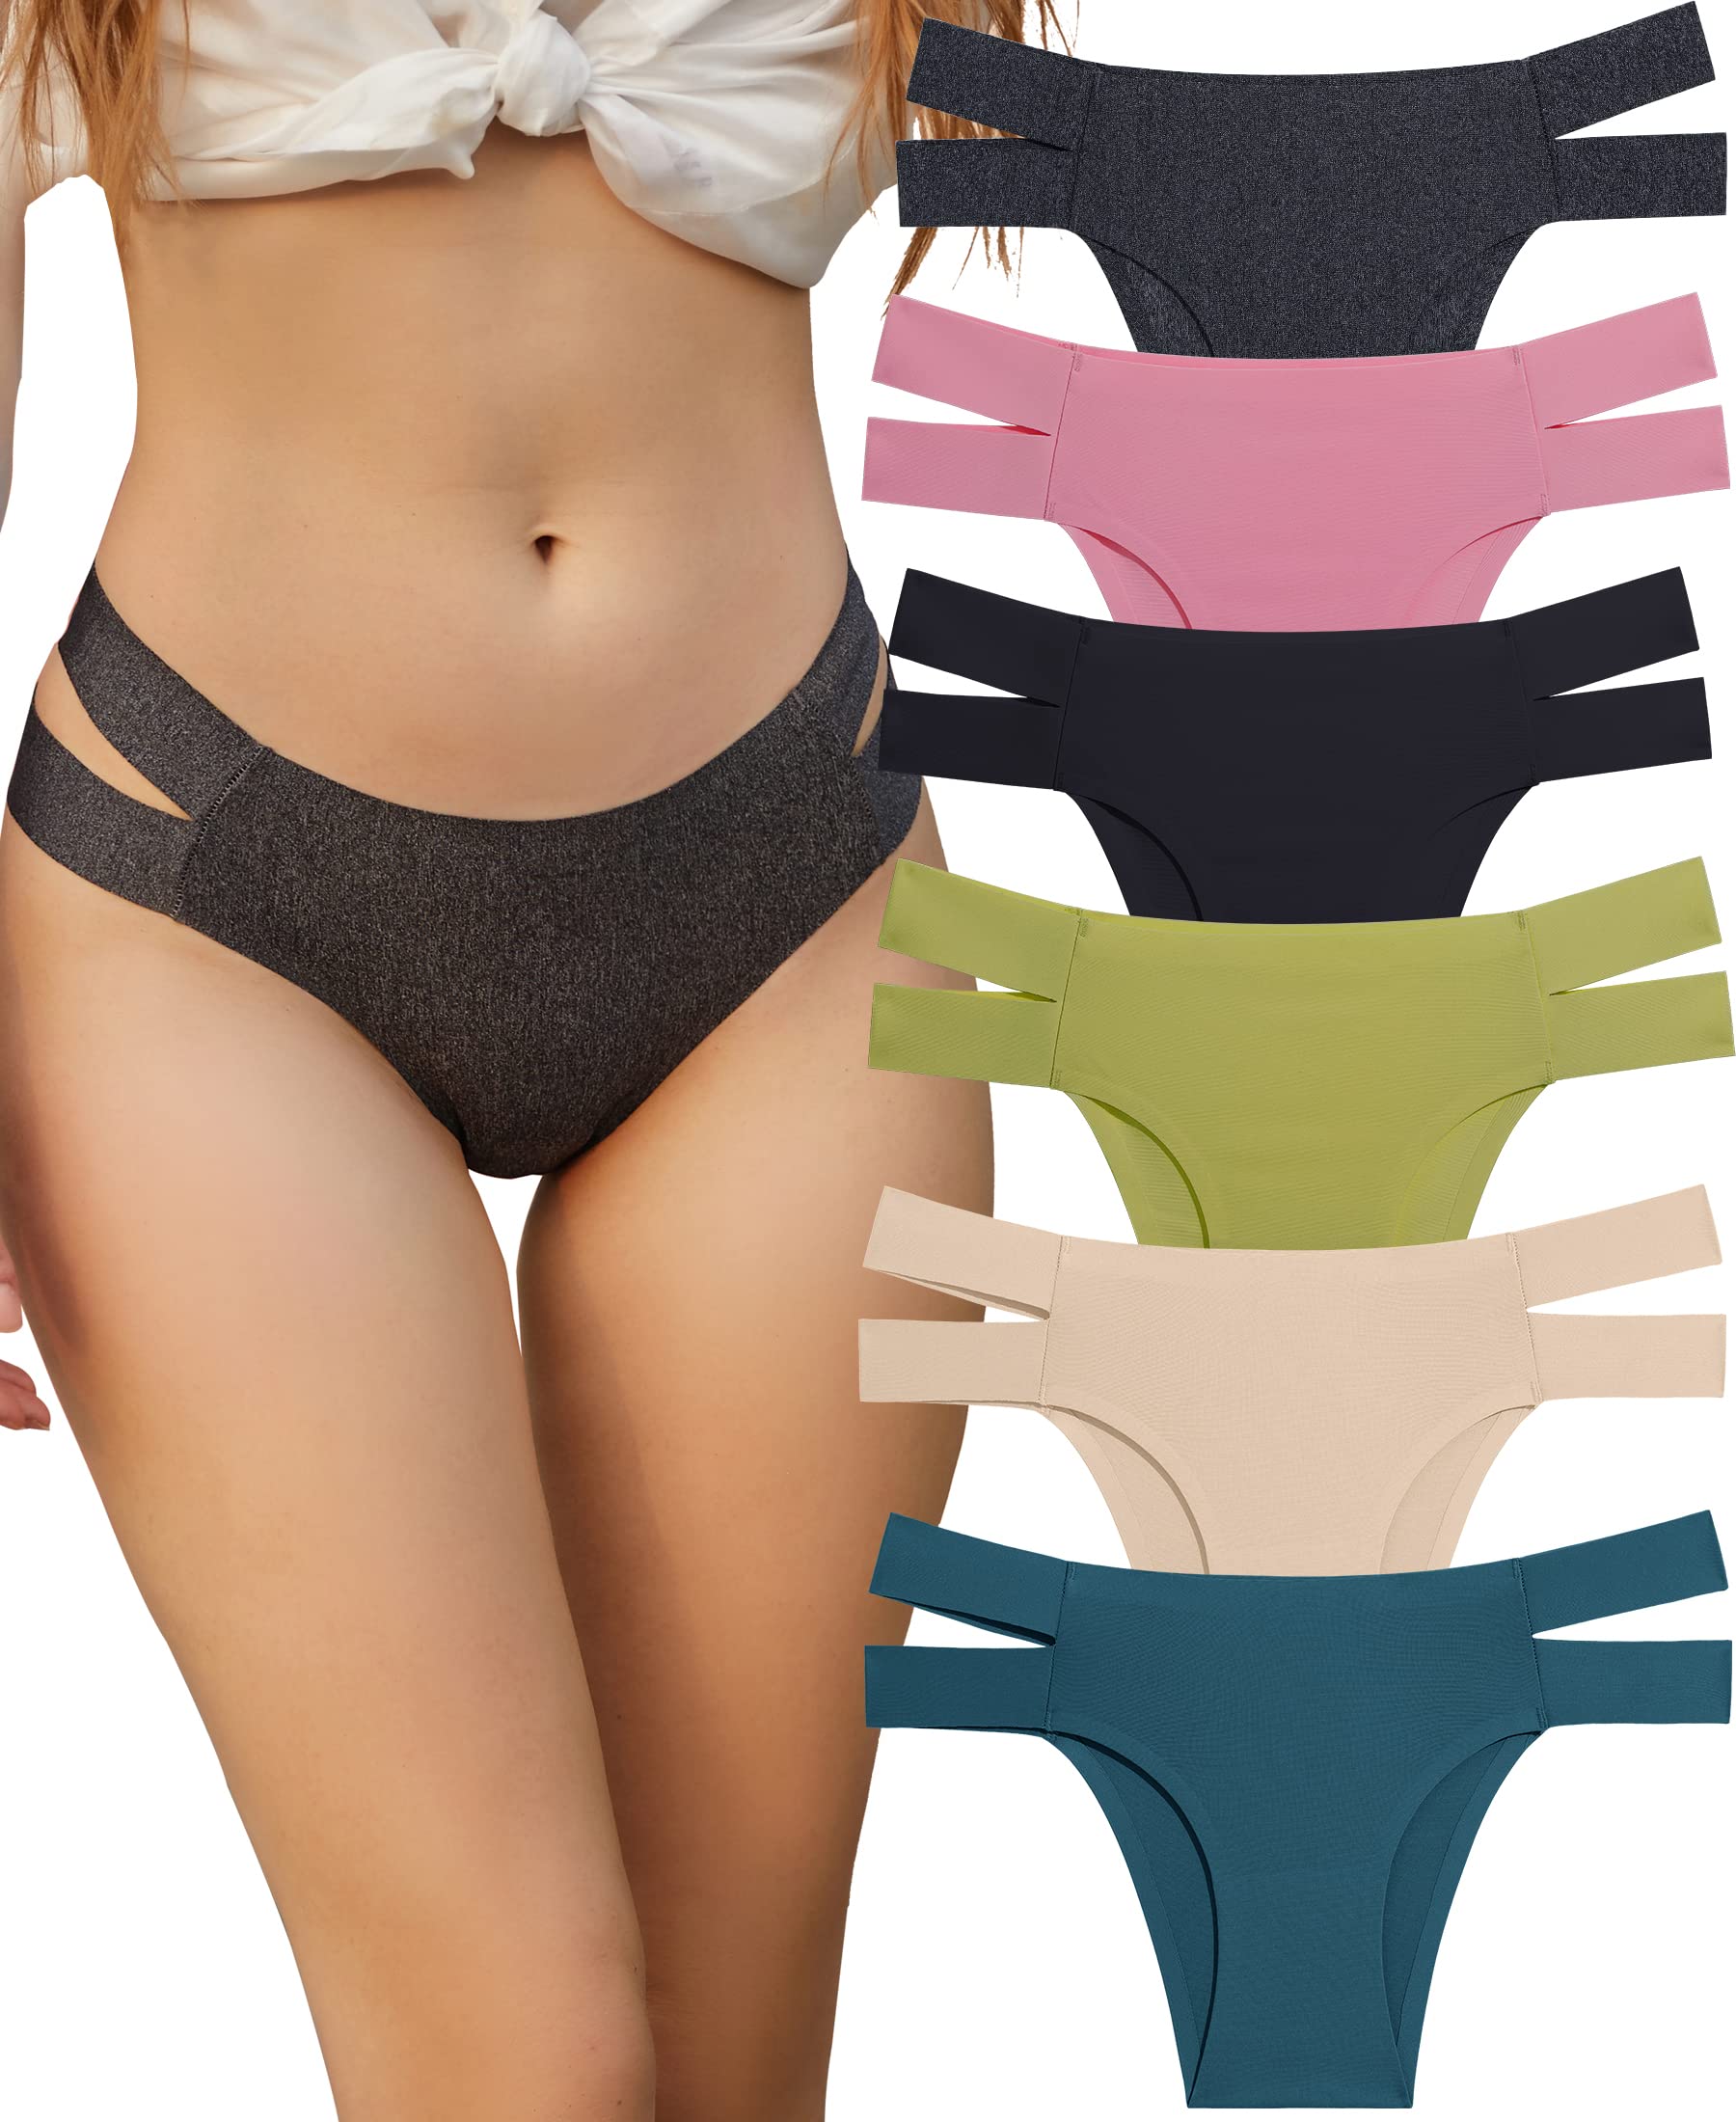 KNOWYOU Knowyou Seamless Underwear for Women Sexy Bikini Panties